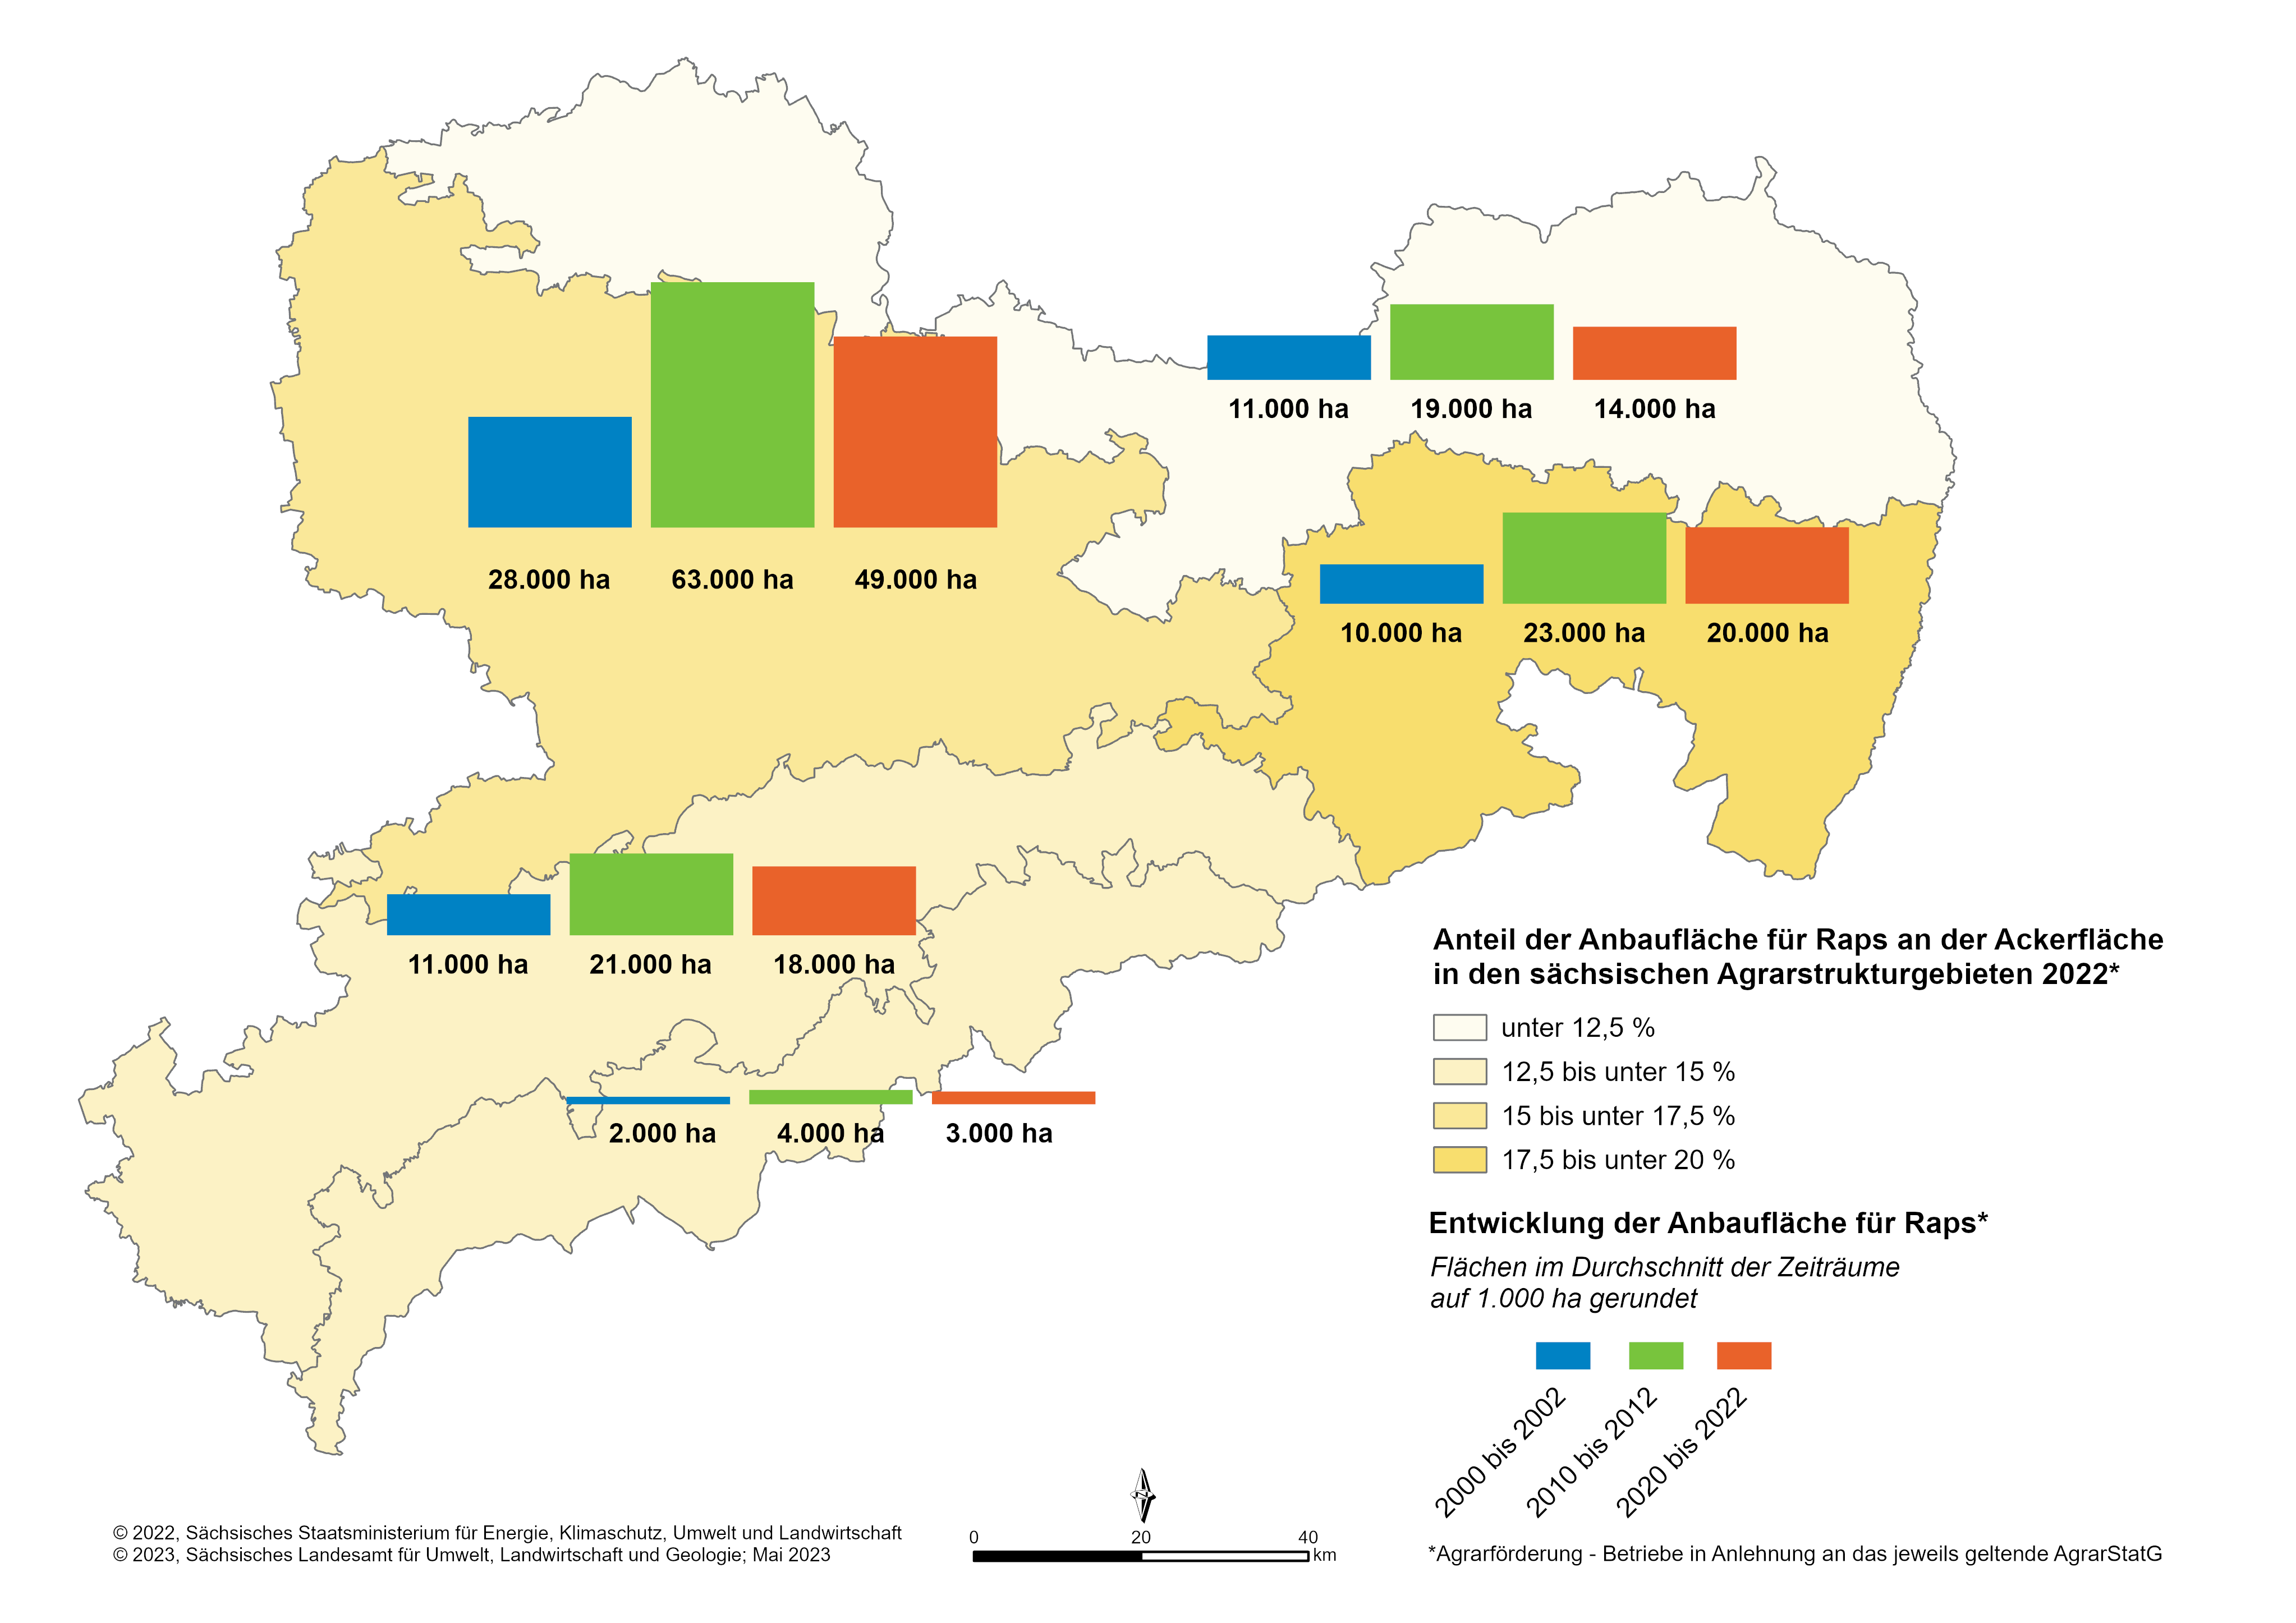 Der Rapsanbau hat sich seit 1996 in Sachsen verdoppelt. Der Anstieg ist zu mehr als 2/3 in den ackerbaulichen Gunstlagen. Seit einigen Jahren sind die Anbauumfänge mit 18% relativ konstant, wobei dies in den Regionen zwischen 14 und 20 % variiert.